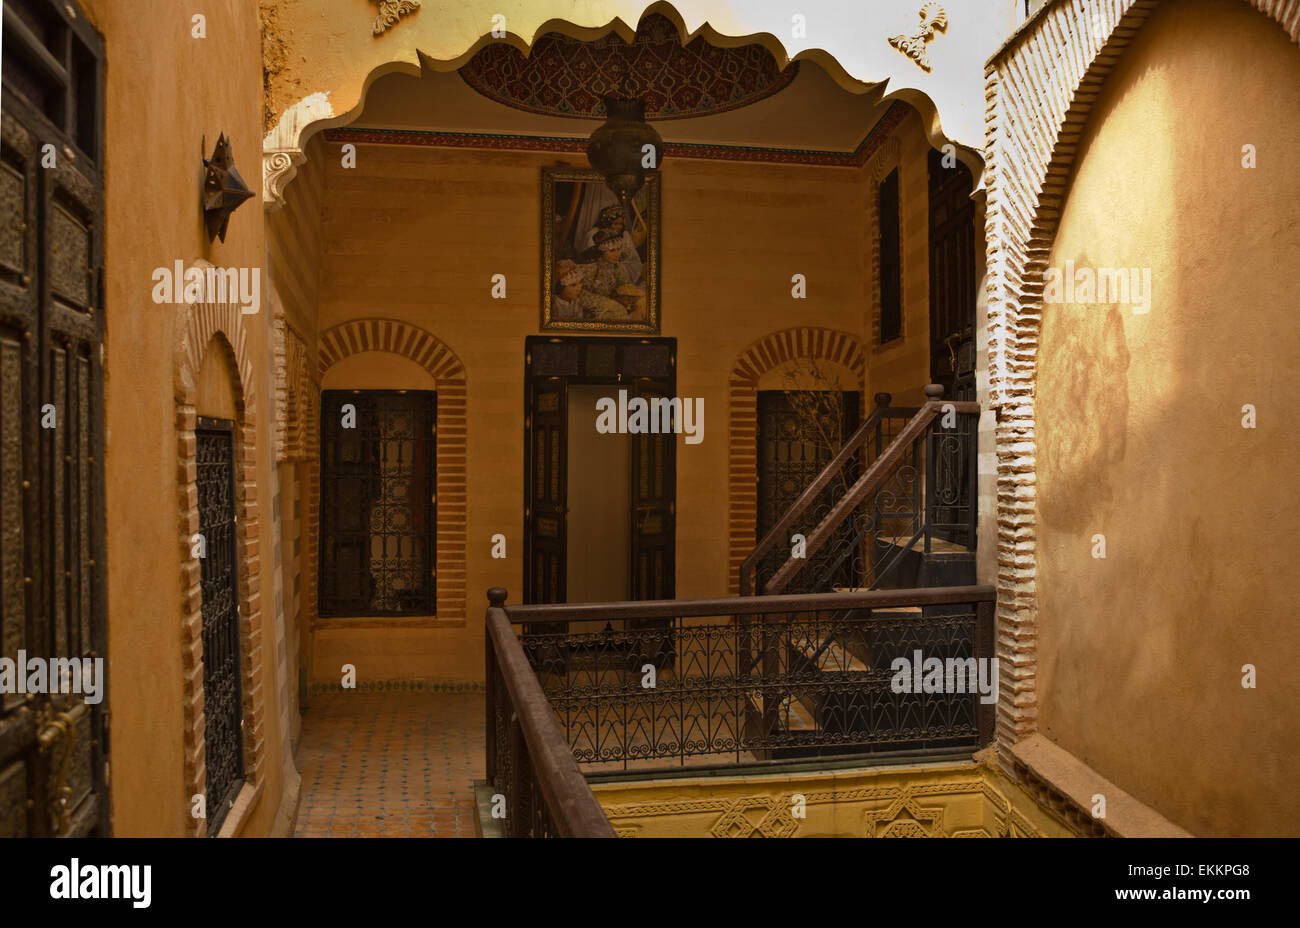 Innenansicht eines arabischen Riad mit traditionellen Möbeln, Teppichen, Lampen, Fliesen, Bögen usw.. Stockfoto